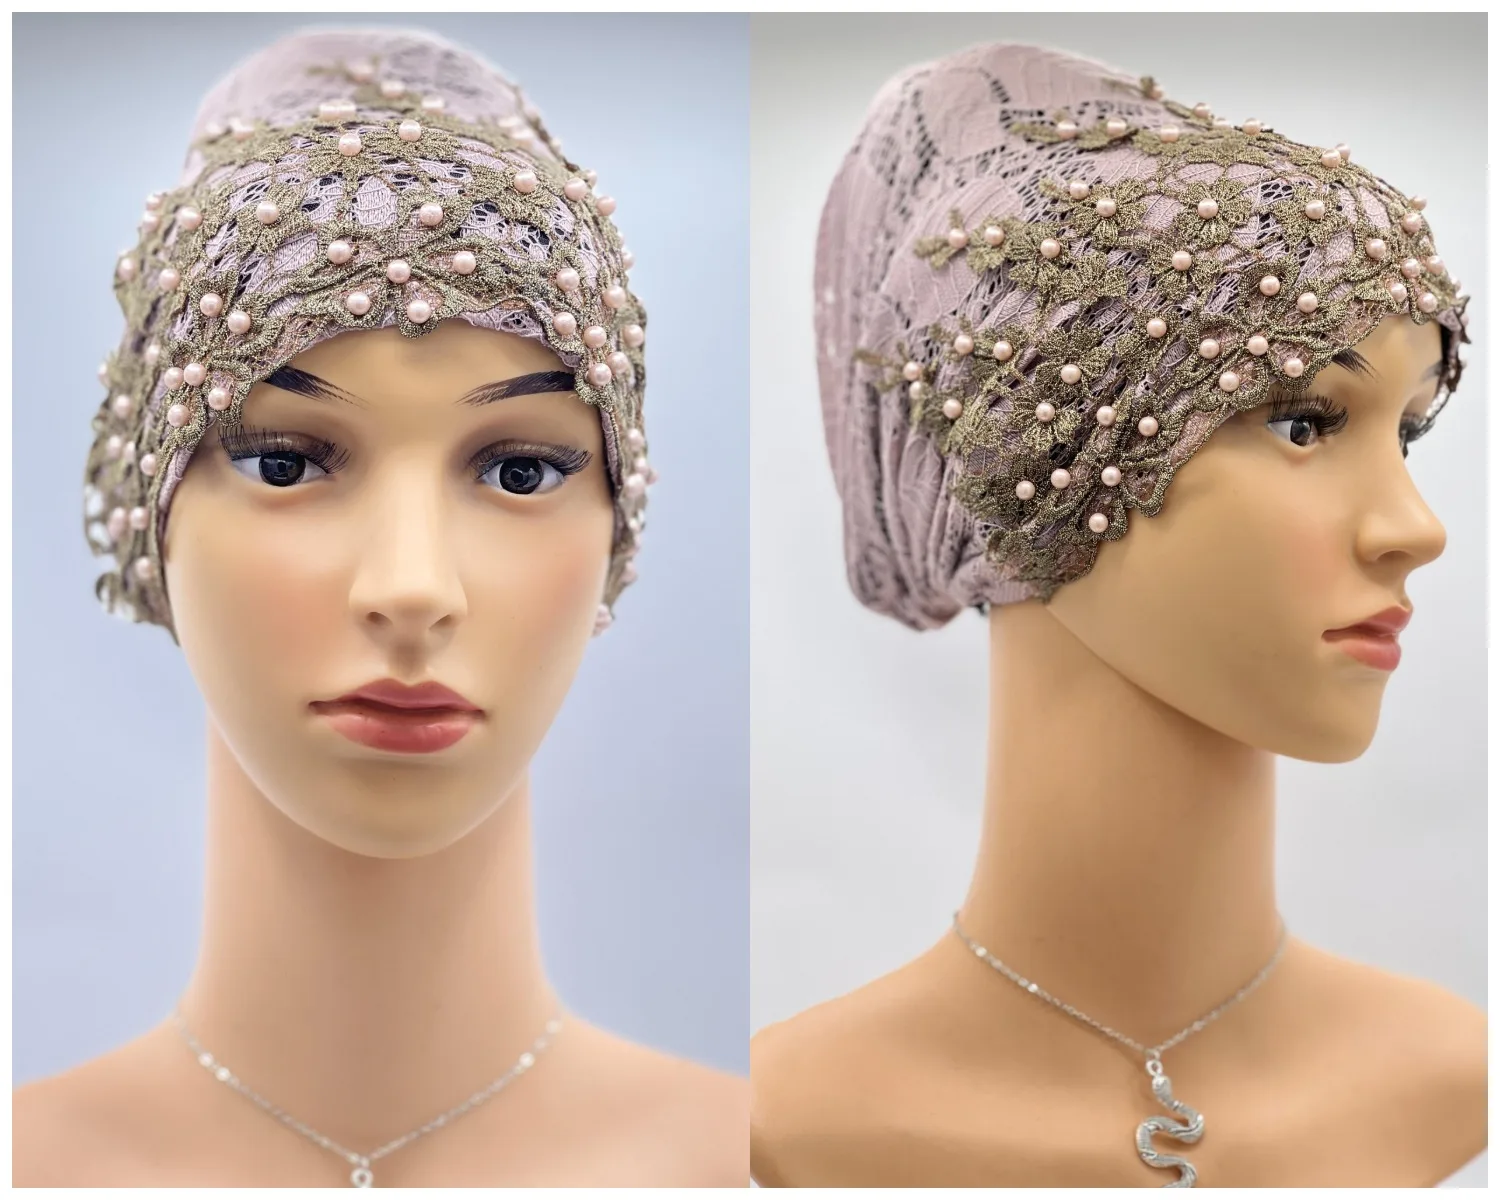 

исламские товары хиджабы на голову кепка женская Однотонная женская шапка, шапка-тюрбан с золотой нитью и бусинами, с вышивкой в виде листьев, шапка-тюрбан, мусульманский тюрбан, Турецкая шляпа, Арабская